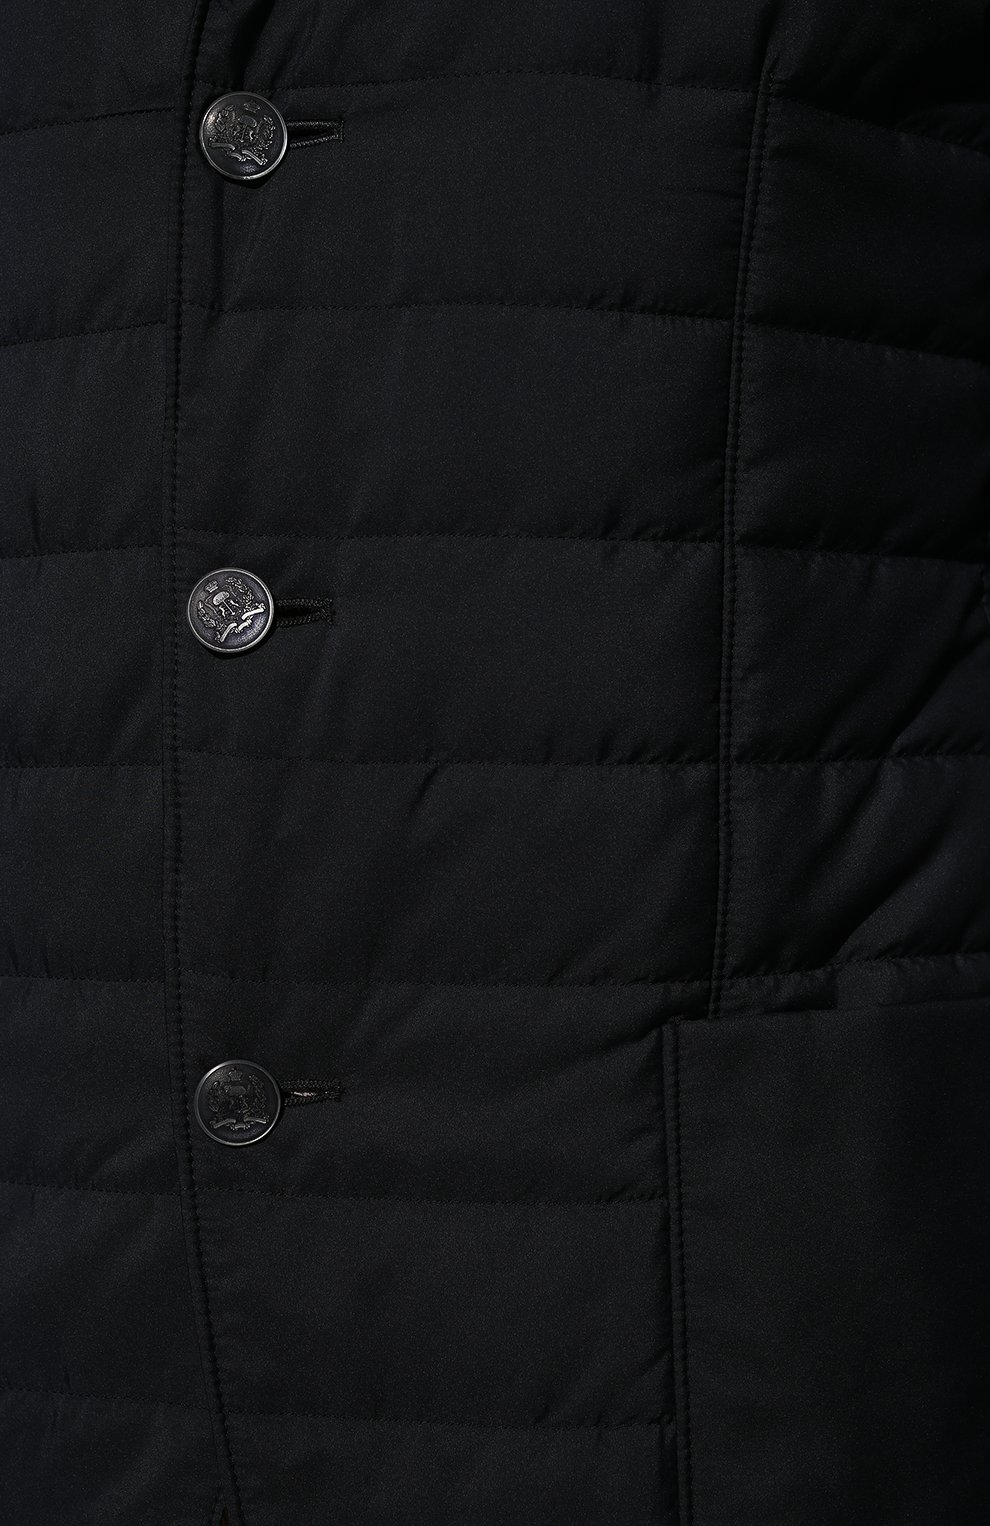 Мужская утепленная куртка CORNELIANI темно-синего цвета, арт. 896S24-2113051/00 | Фото 5 (Кросс-КТ: Куртка; Рукава: Длинные; Материал внешний: Синтетический материал; Мужское Кросс-КТ: утепленные куртки; Материал подклада: Лен; Стили: Классический; Длина (верхняя одежда): Короткие)